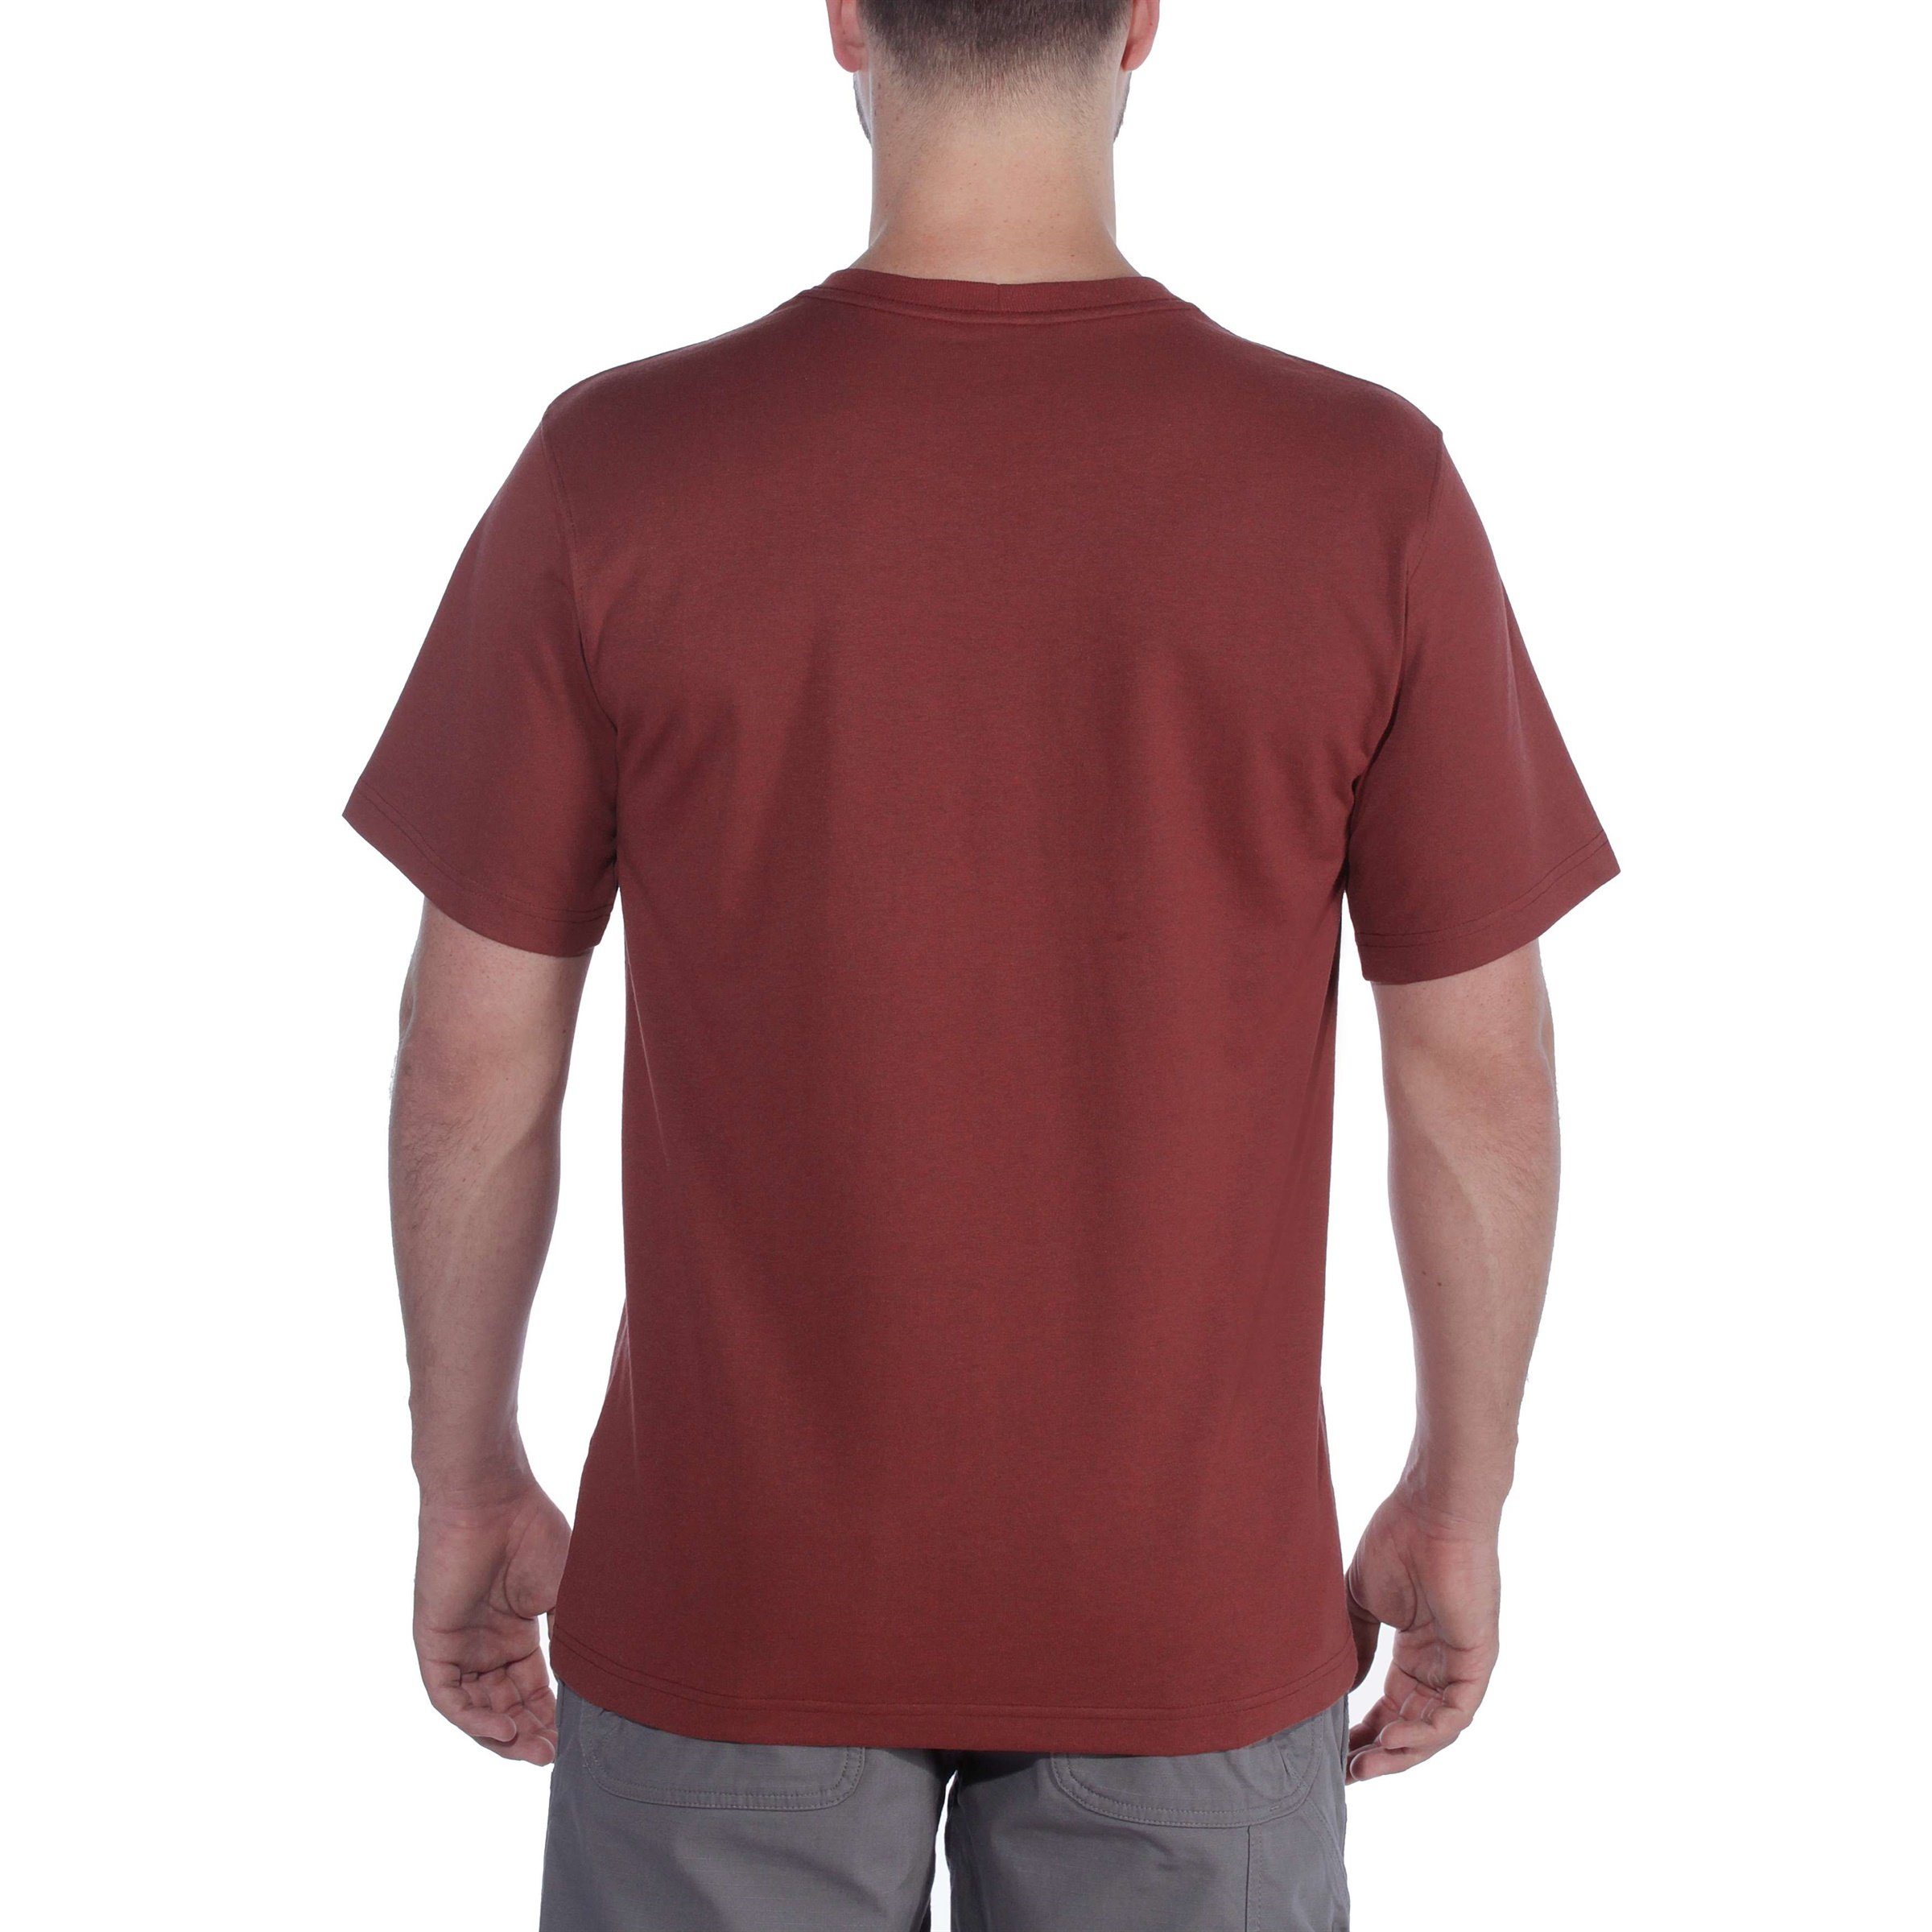 Carhartt T-Shirt Carhartt Herren T-Shirt Fit Short-Sleeve Relaxed Adult carbon Graphic Heavyweight heather Logo